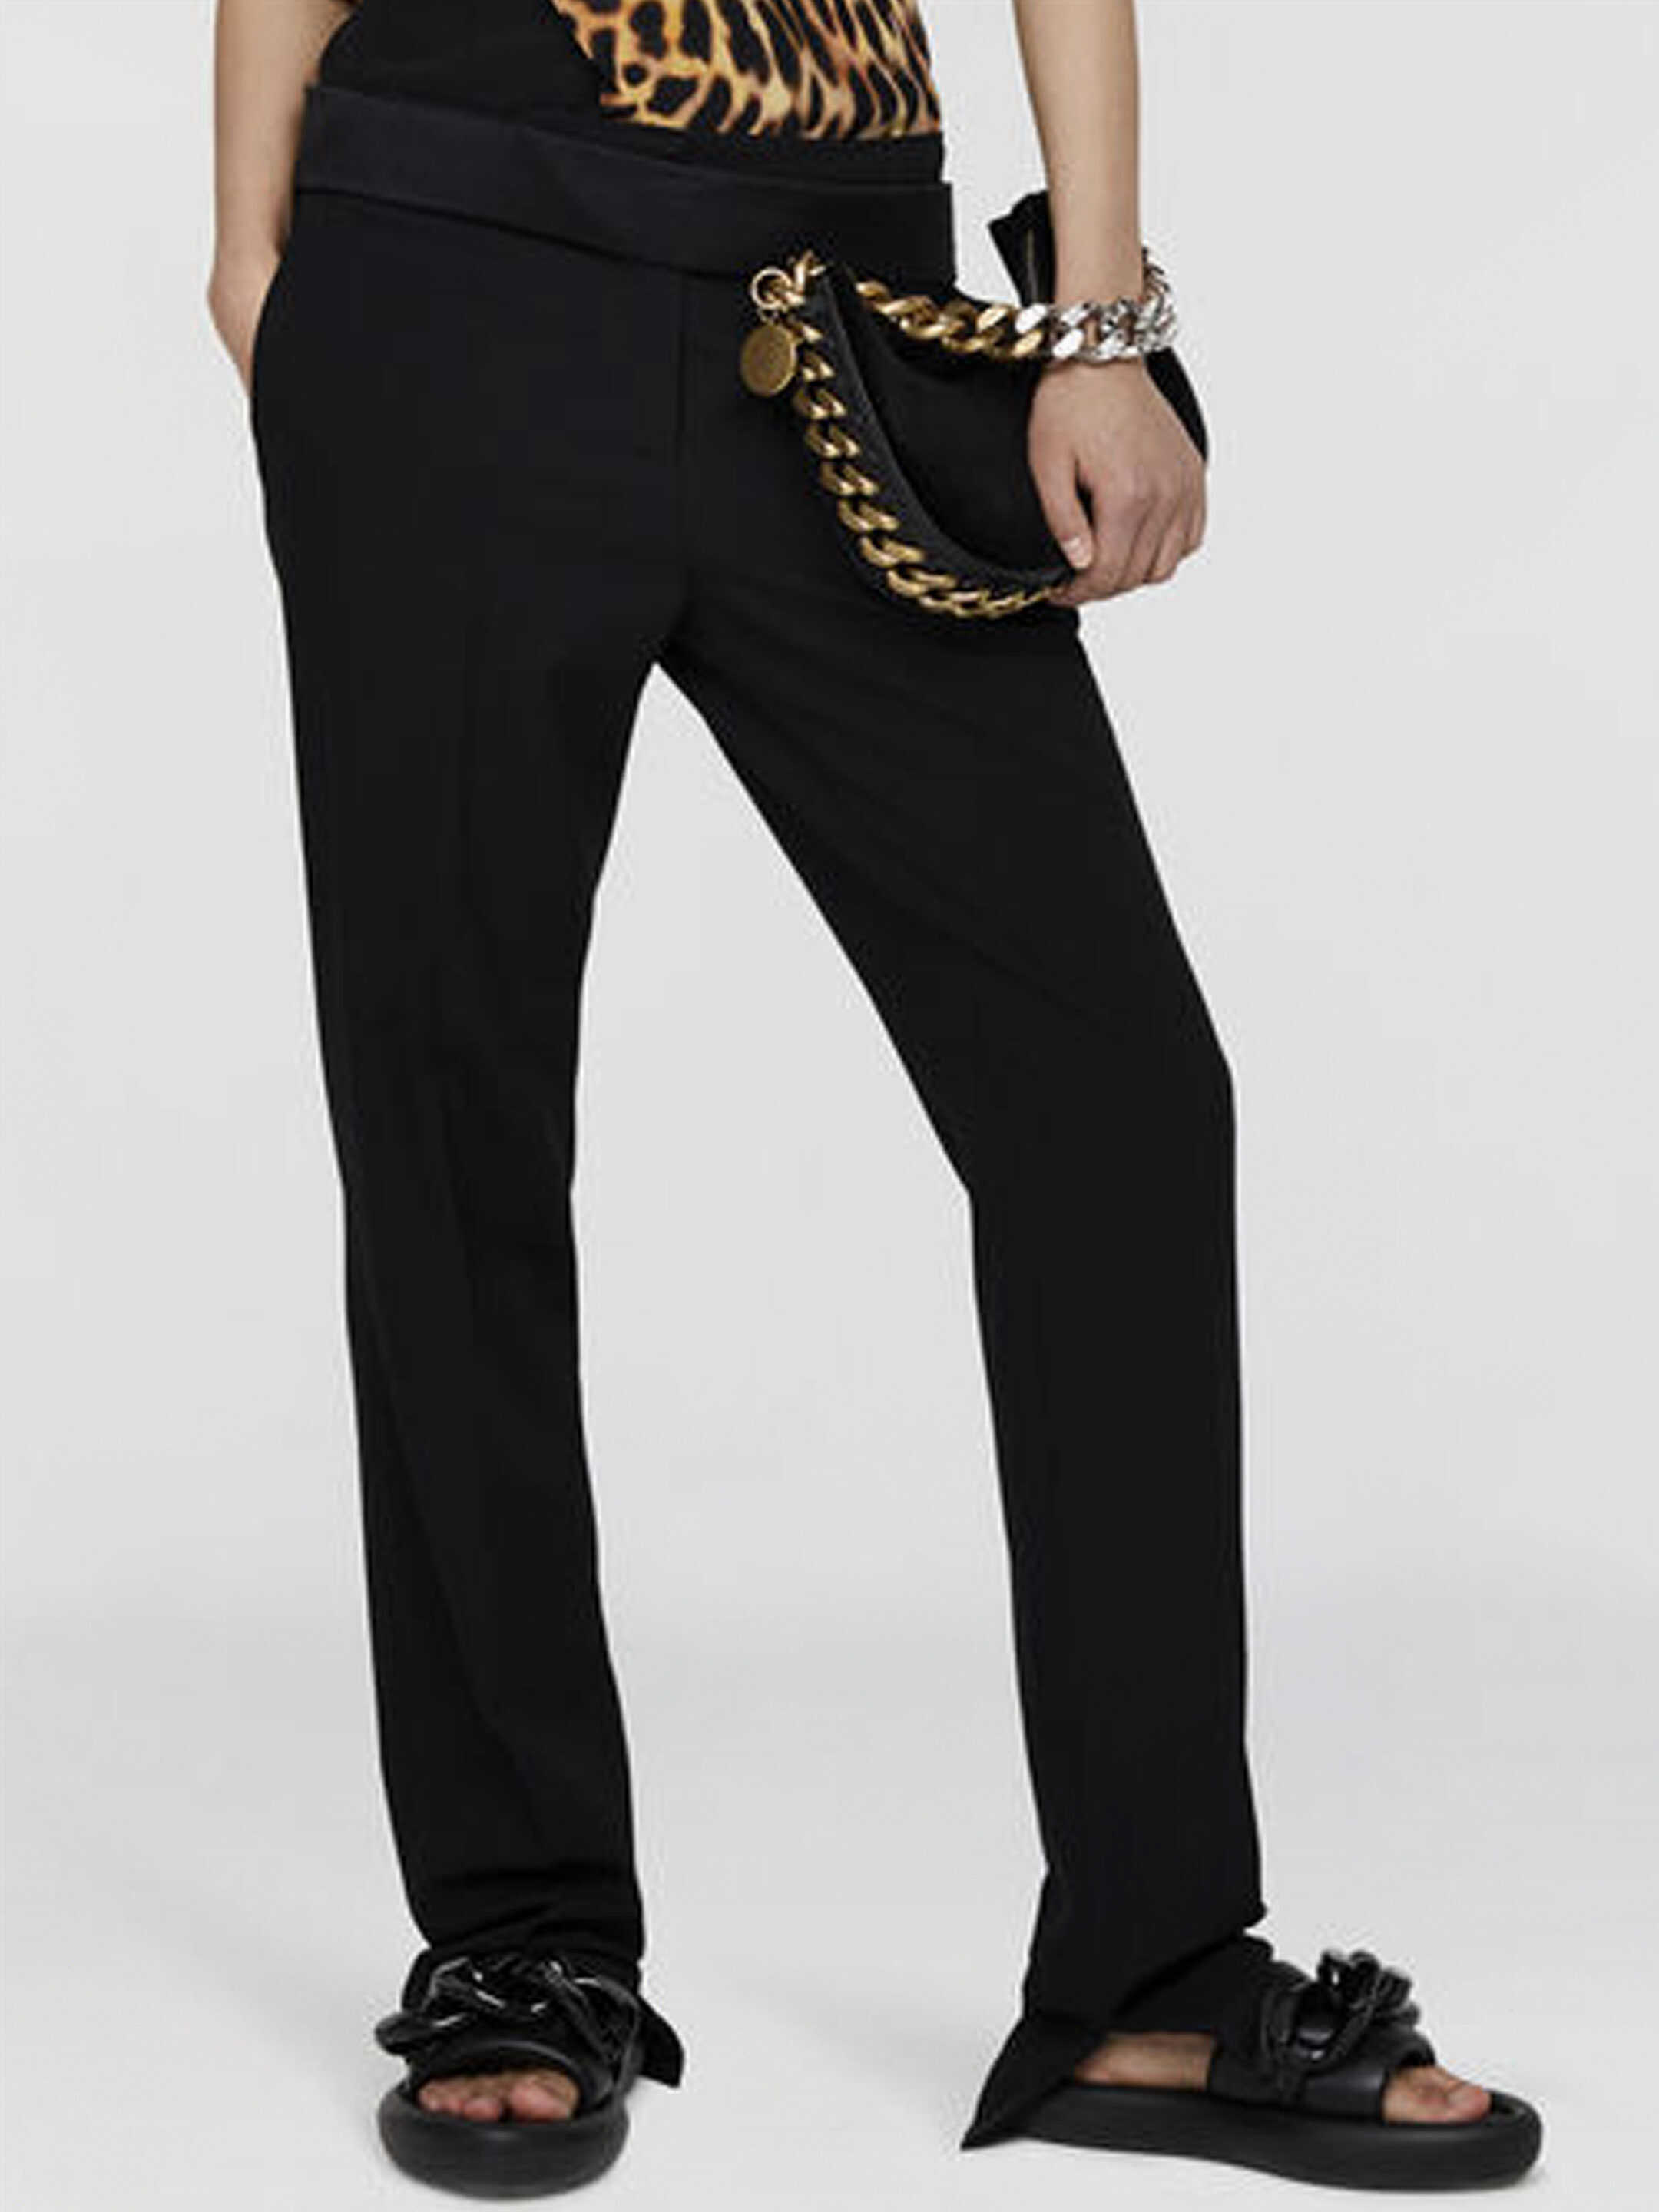 Stella McCartney Tailoring Pant Black image0